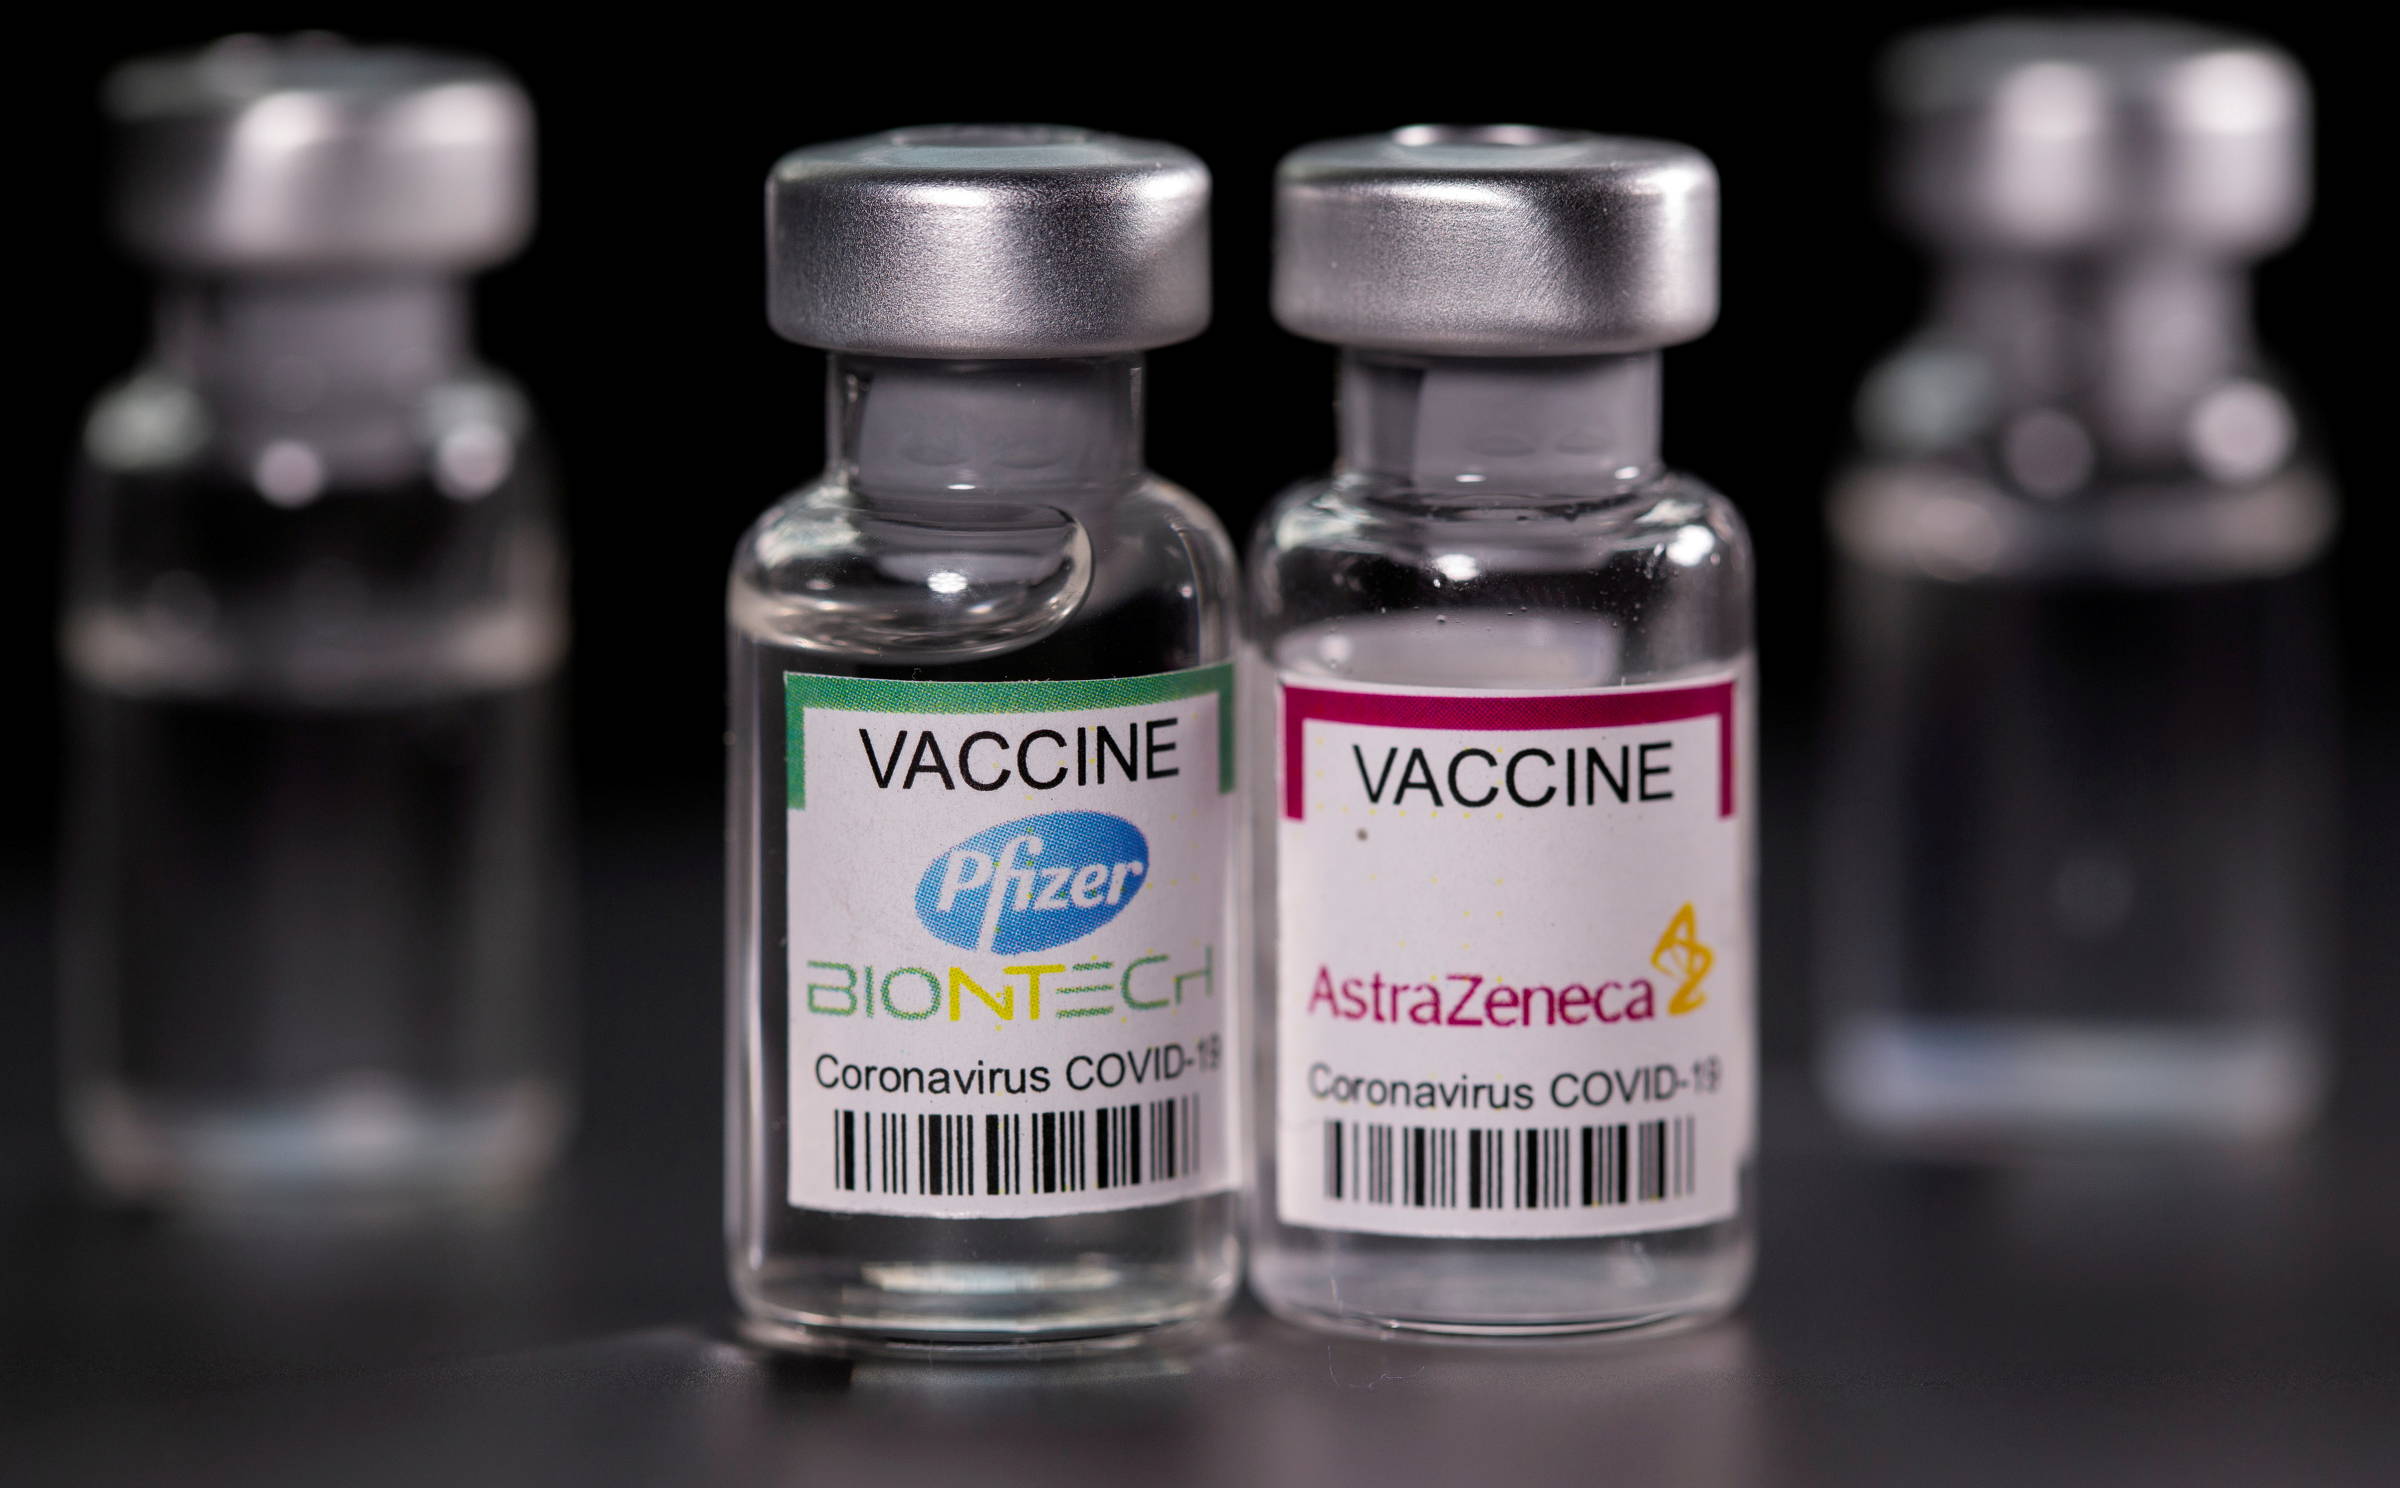 Proteção de vacina da Pfizer e da AstraZeneca cai depois de 6 meses, mostra estudo - 26/08/2021 - Equilíbrio e Saúde - Folha